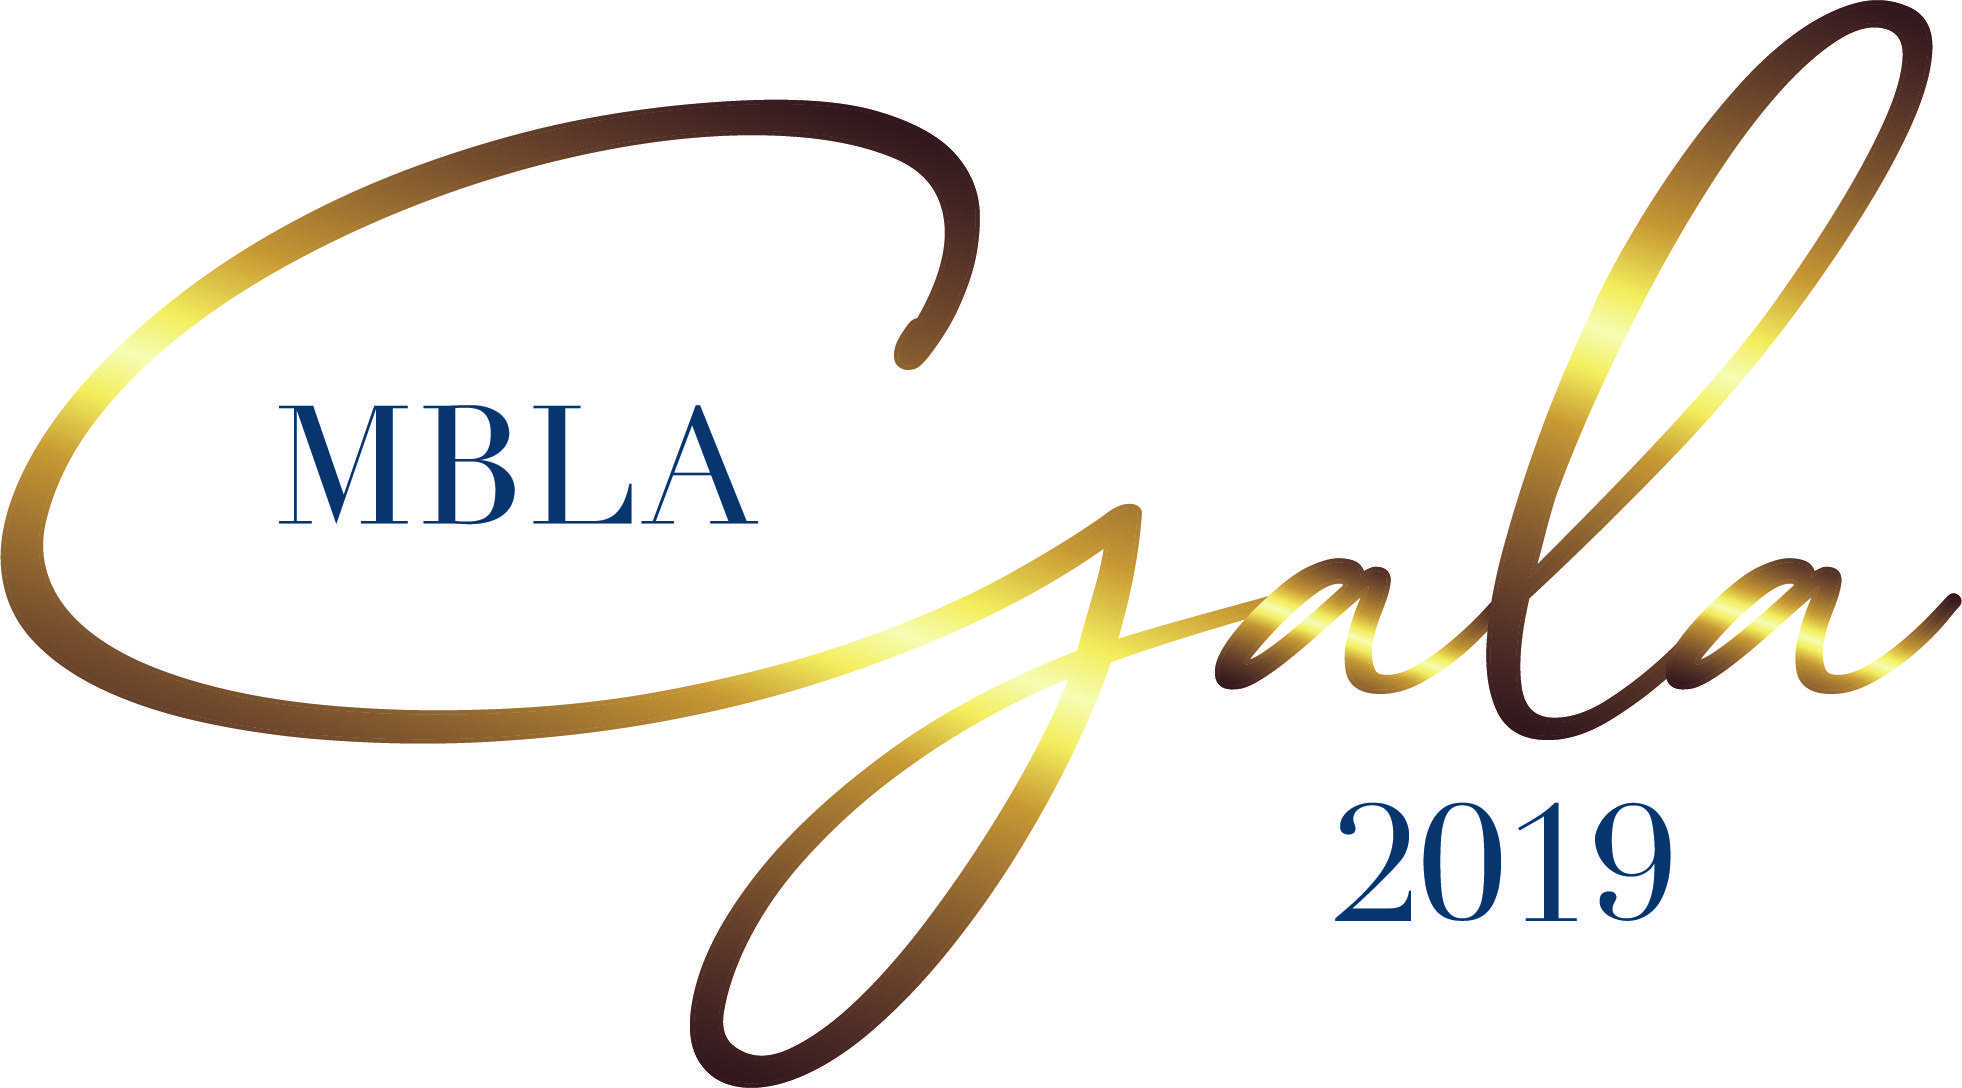 Gala Logo - 2019 MBLA Annual Gala 2